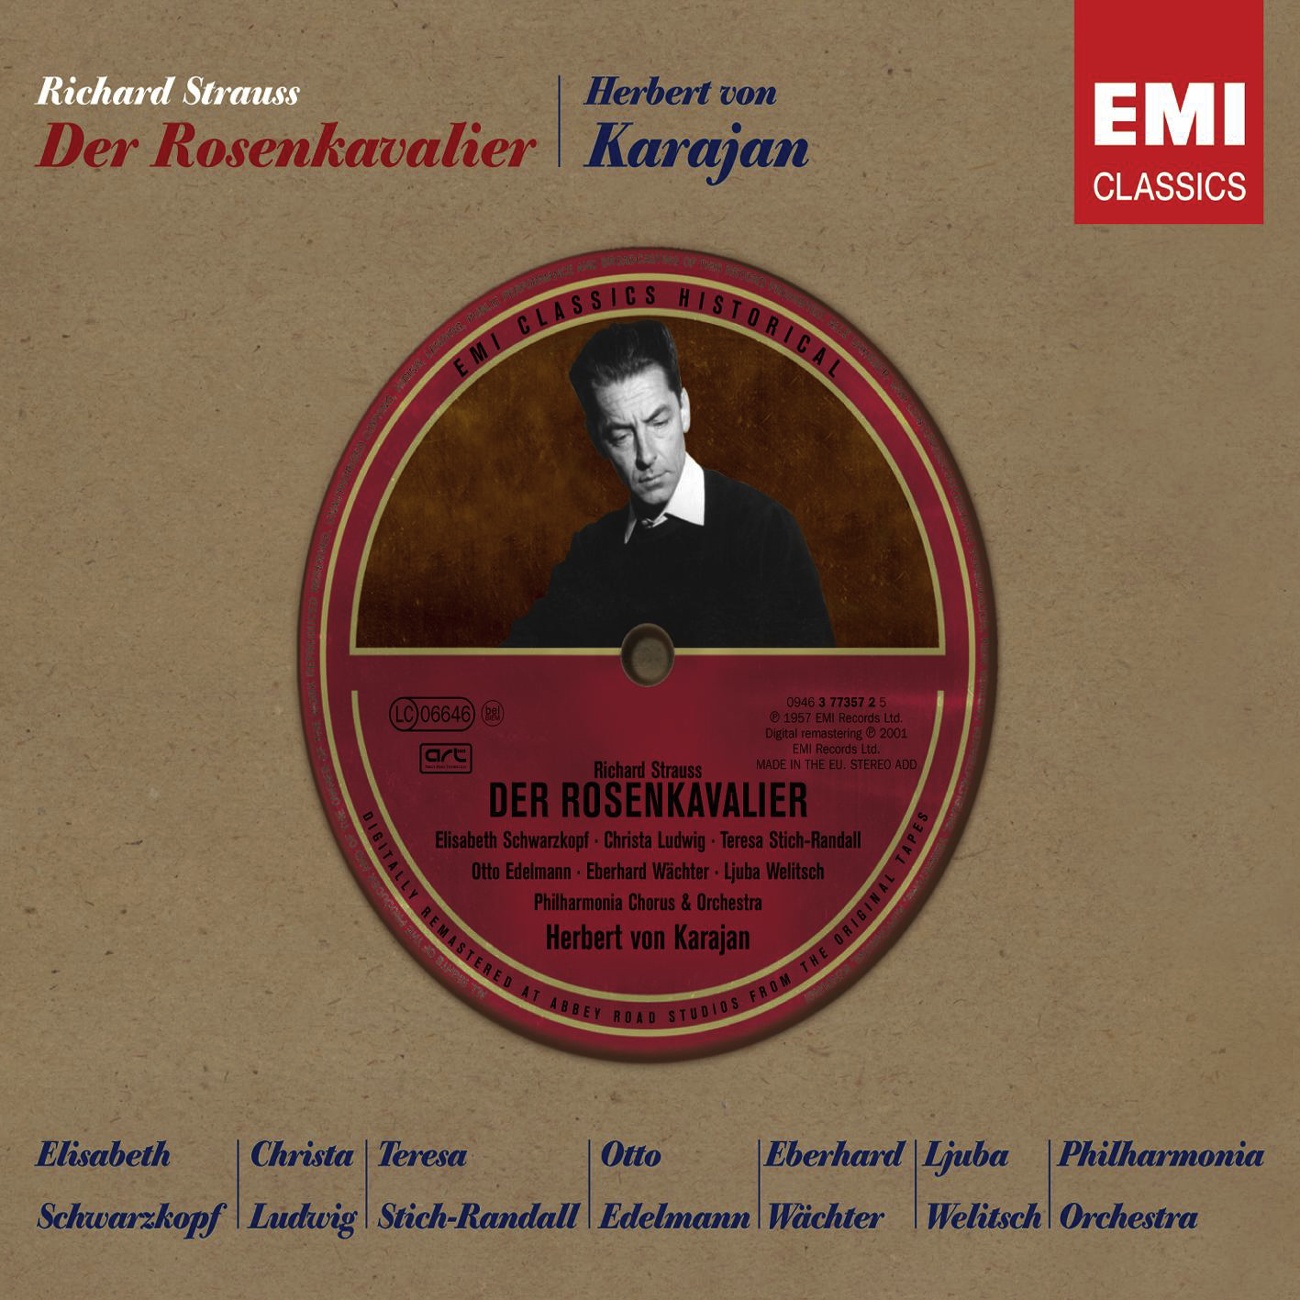 Der Rosenkavalier (2001 Digital Remaster), Act III: Bin von so viel Finesse charmiert (Ochs/Marschallin/Sophie)